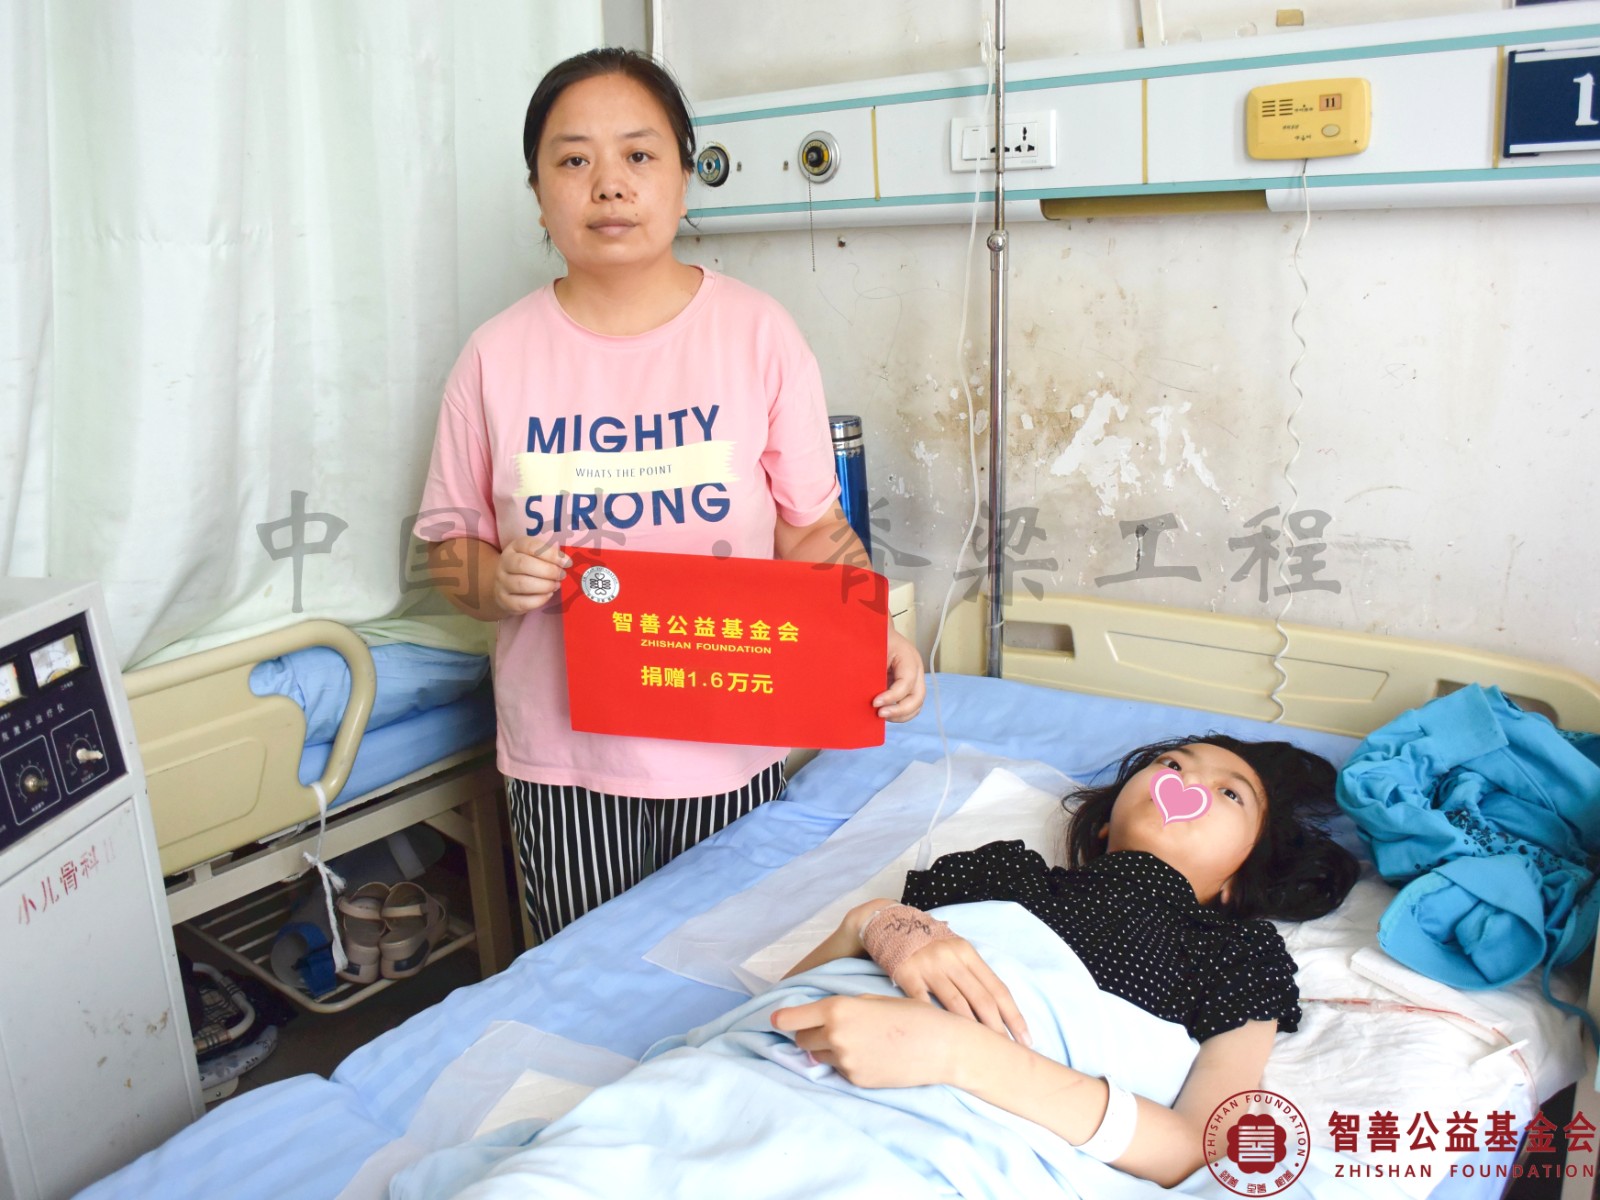 132 在郑州市骨科医院手术的河南开封顺河区患者小冯获智善公益基金会捐赠的1.6万元.jpg